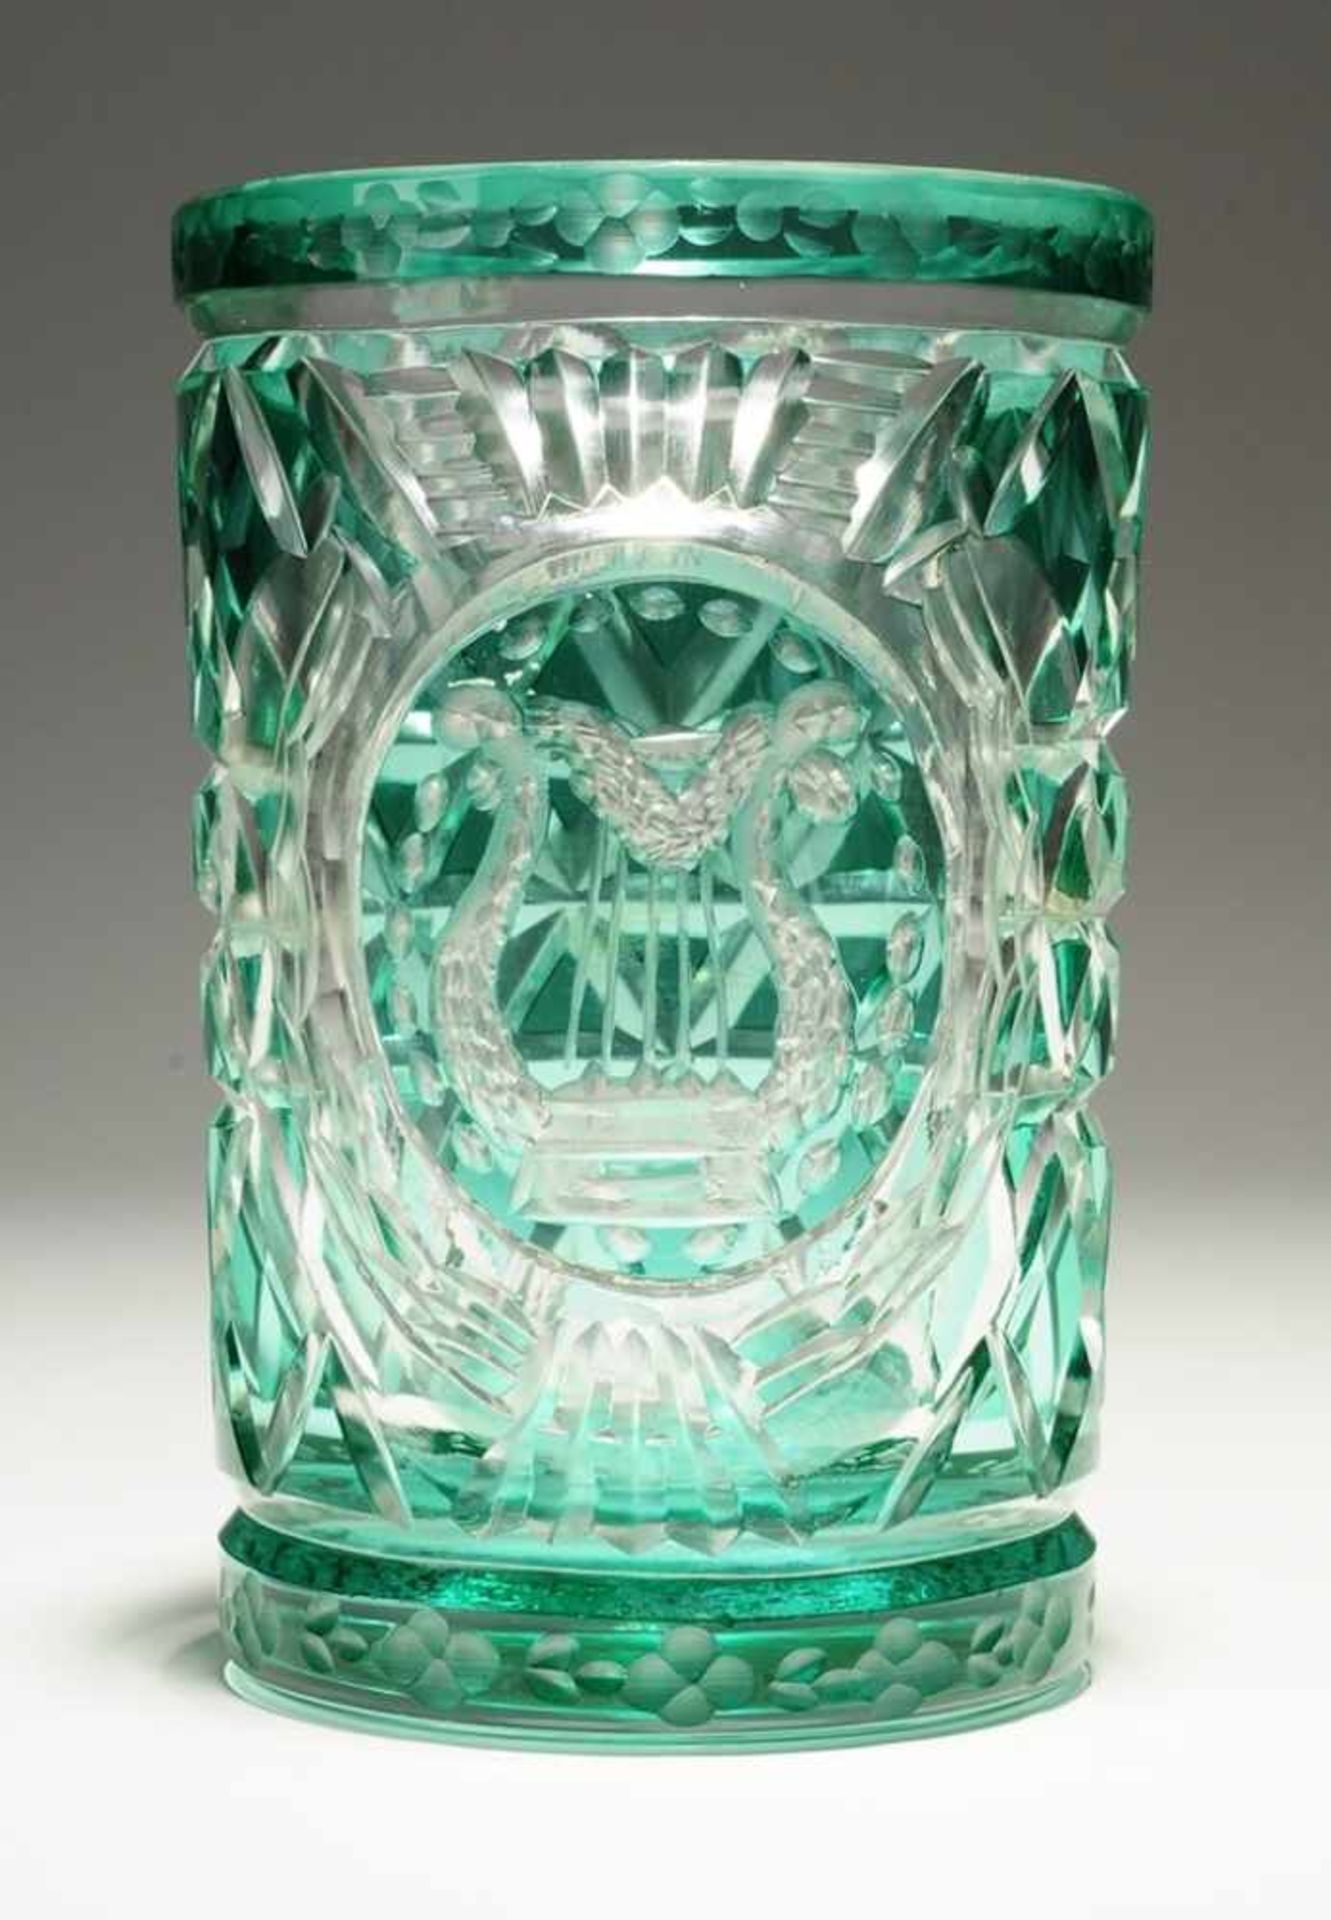 Becherglas Farbloses Glas, part. grün gebeizt. Formgeblasen. Zylindrischer Korpus. Kerbschliffdekor,